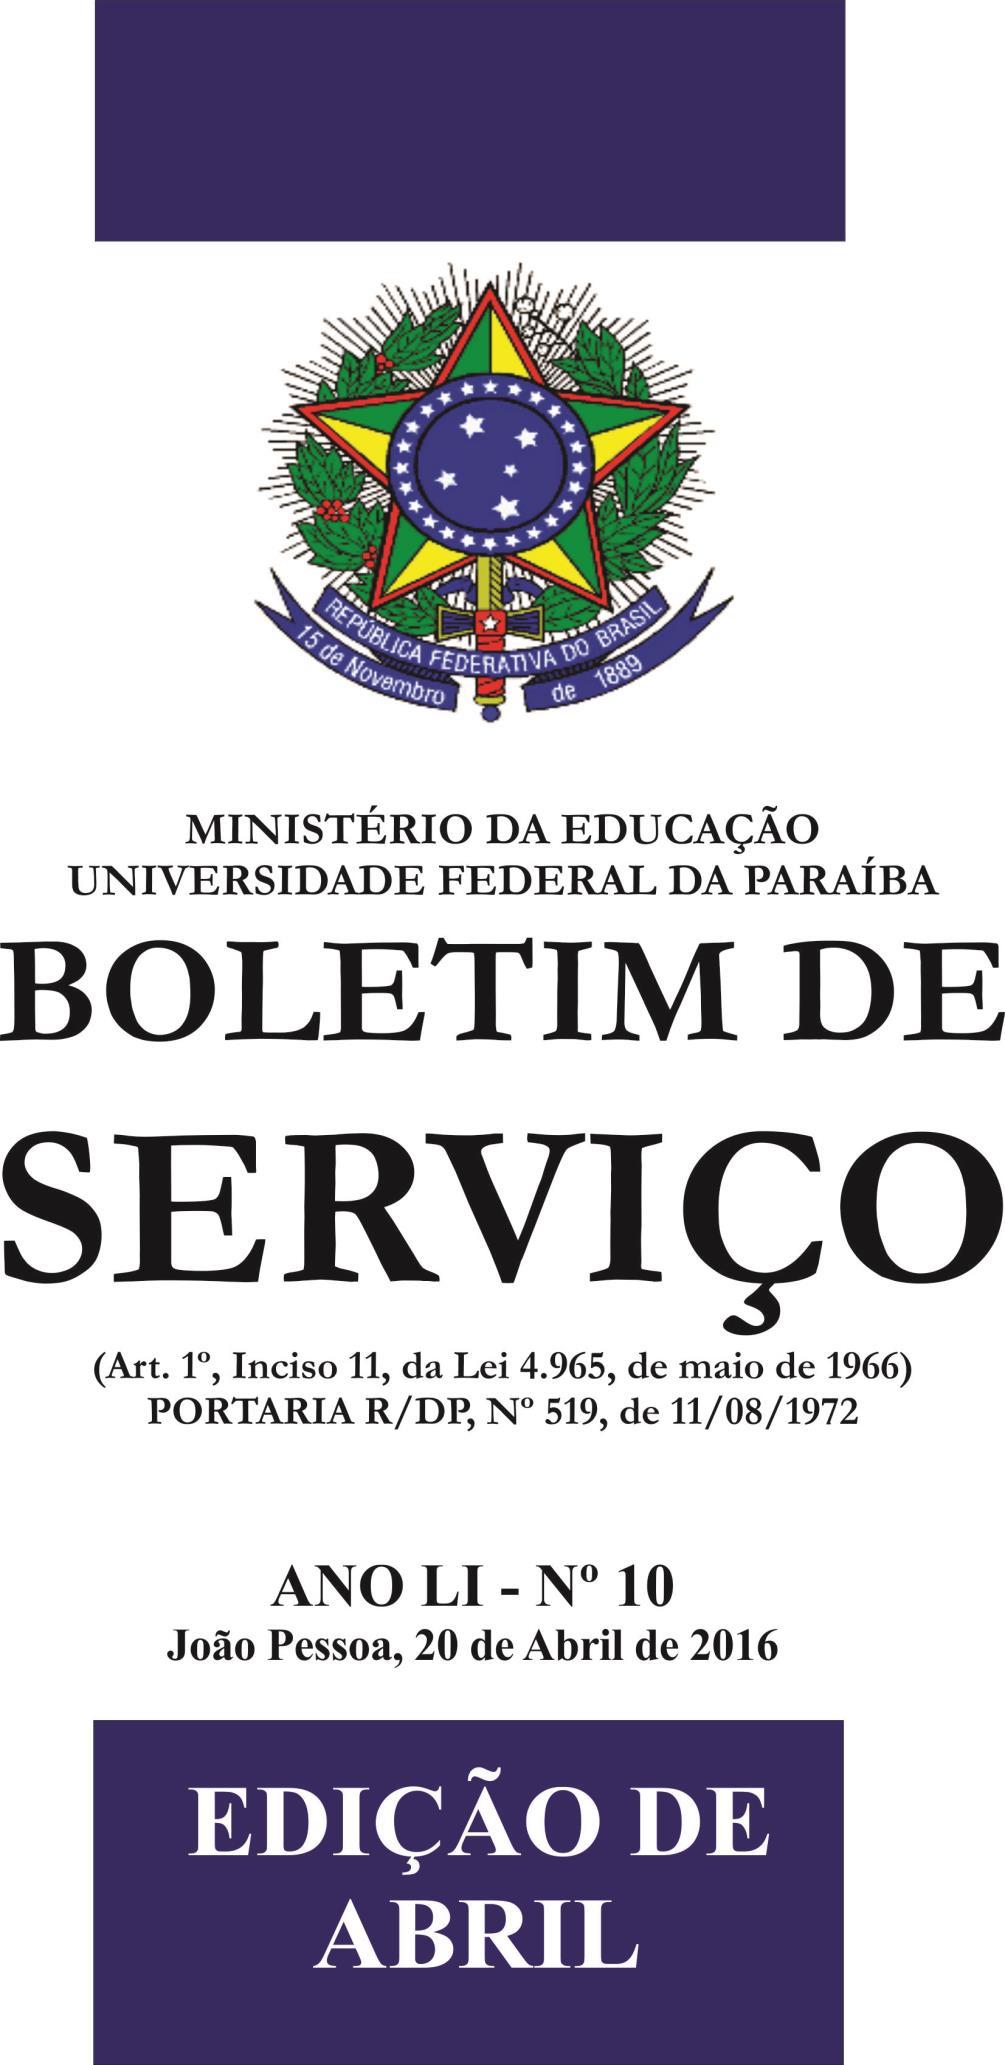 05/10/2018 BOLETIM DE SERVIÇO - Nº 43 PÁGINA 1 ANO LIII